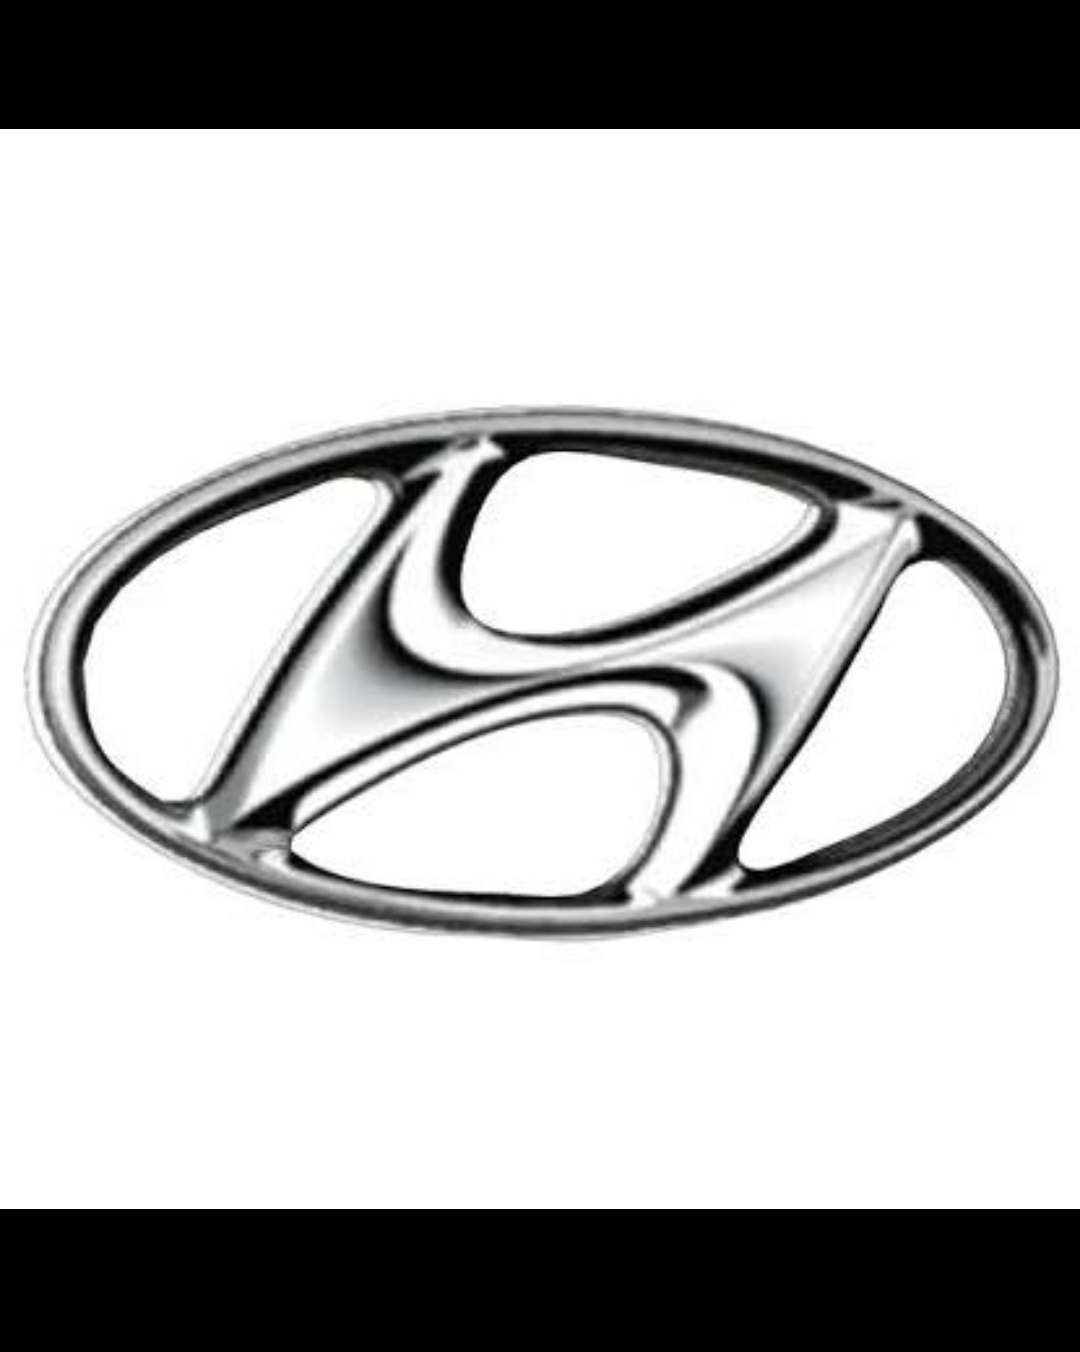 Hyundai Grand i10 1.0 Motion